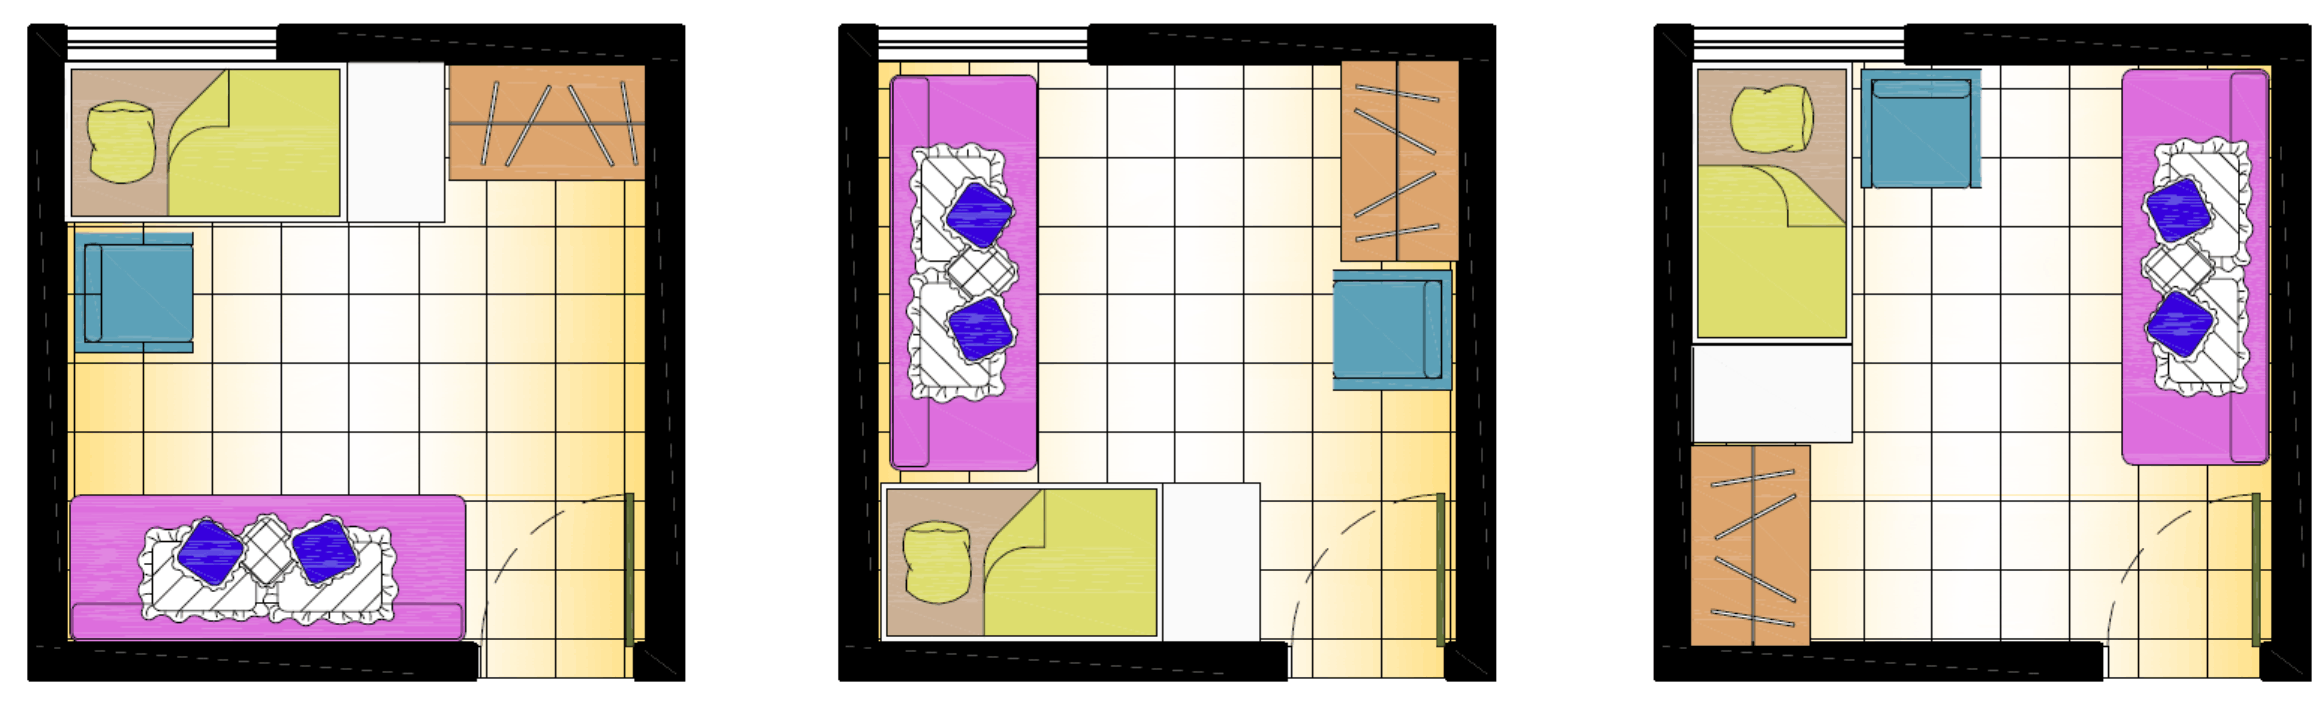 layout 4